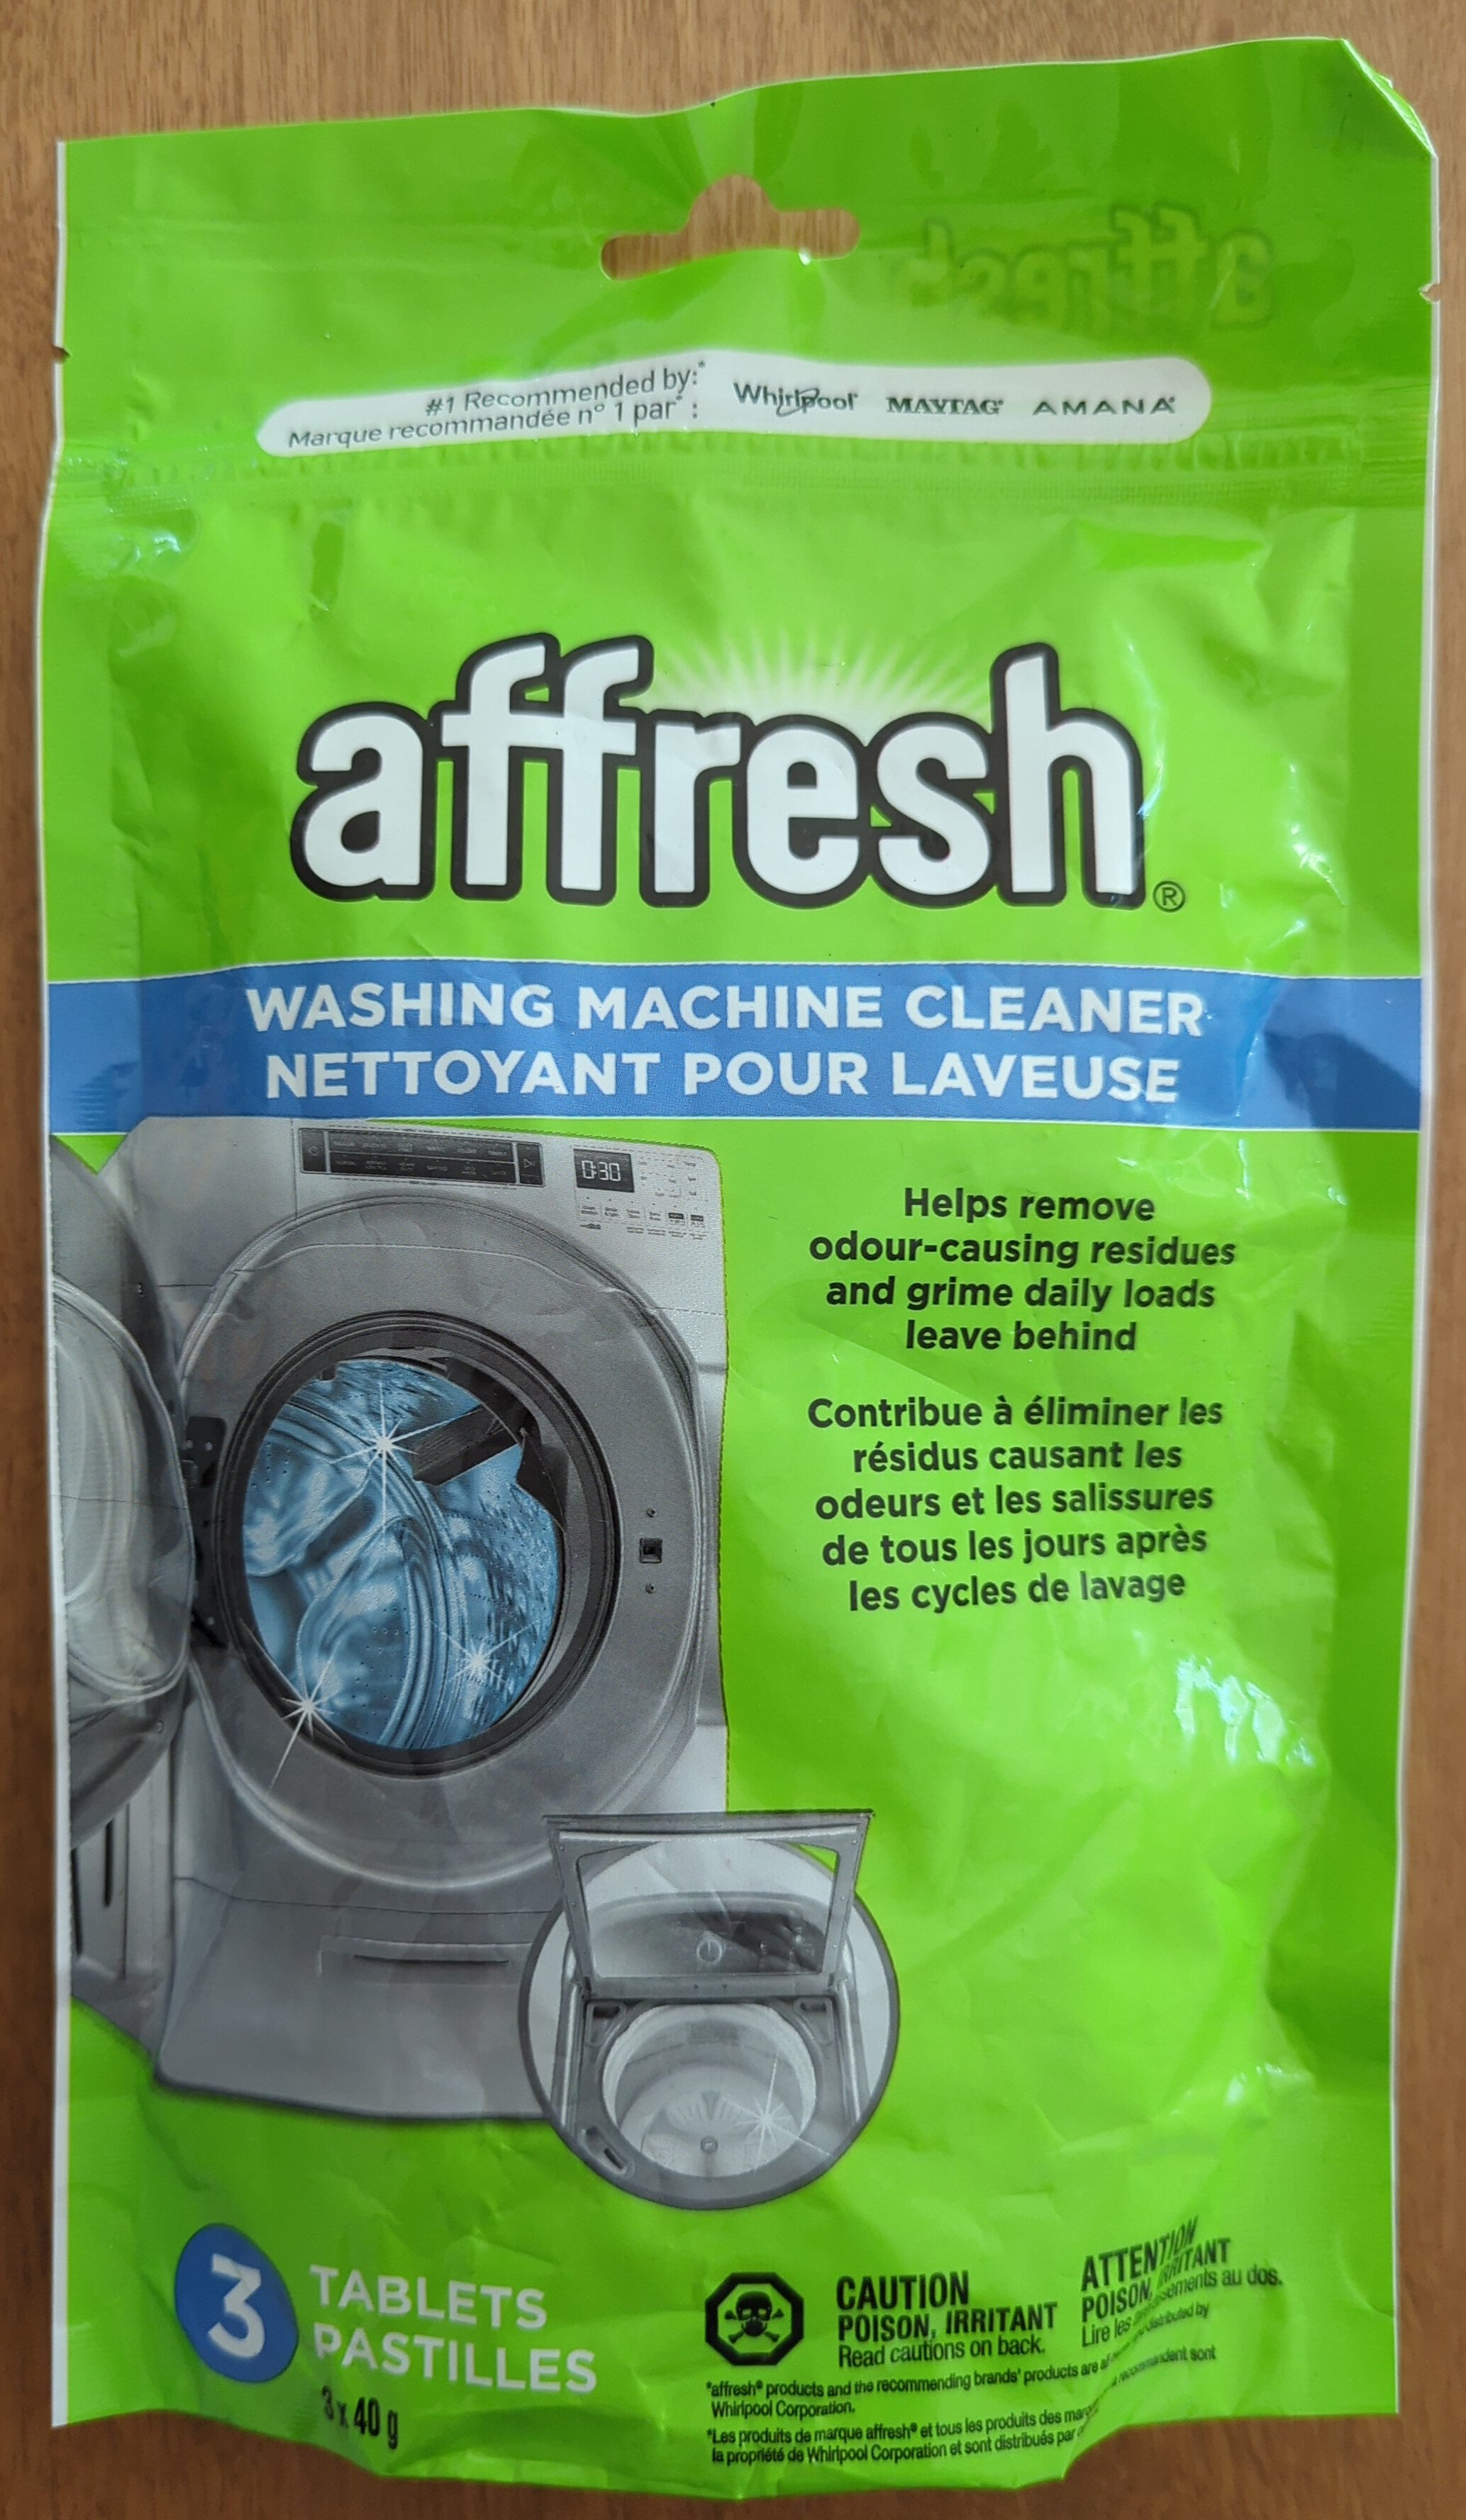 Nettoyant pour laveuse - Product - fr